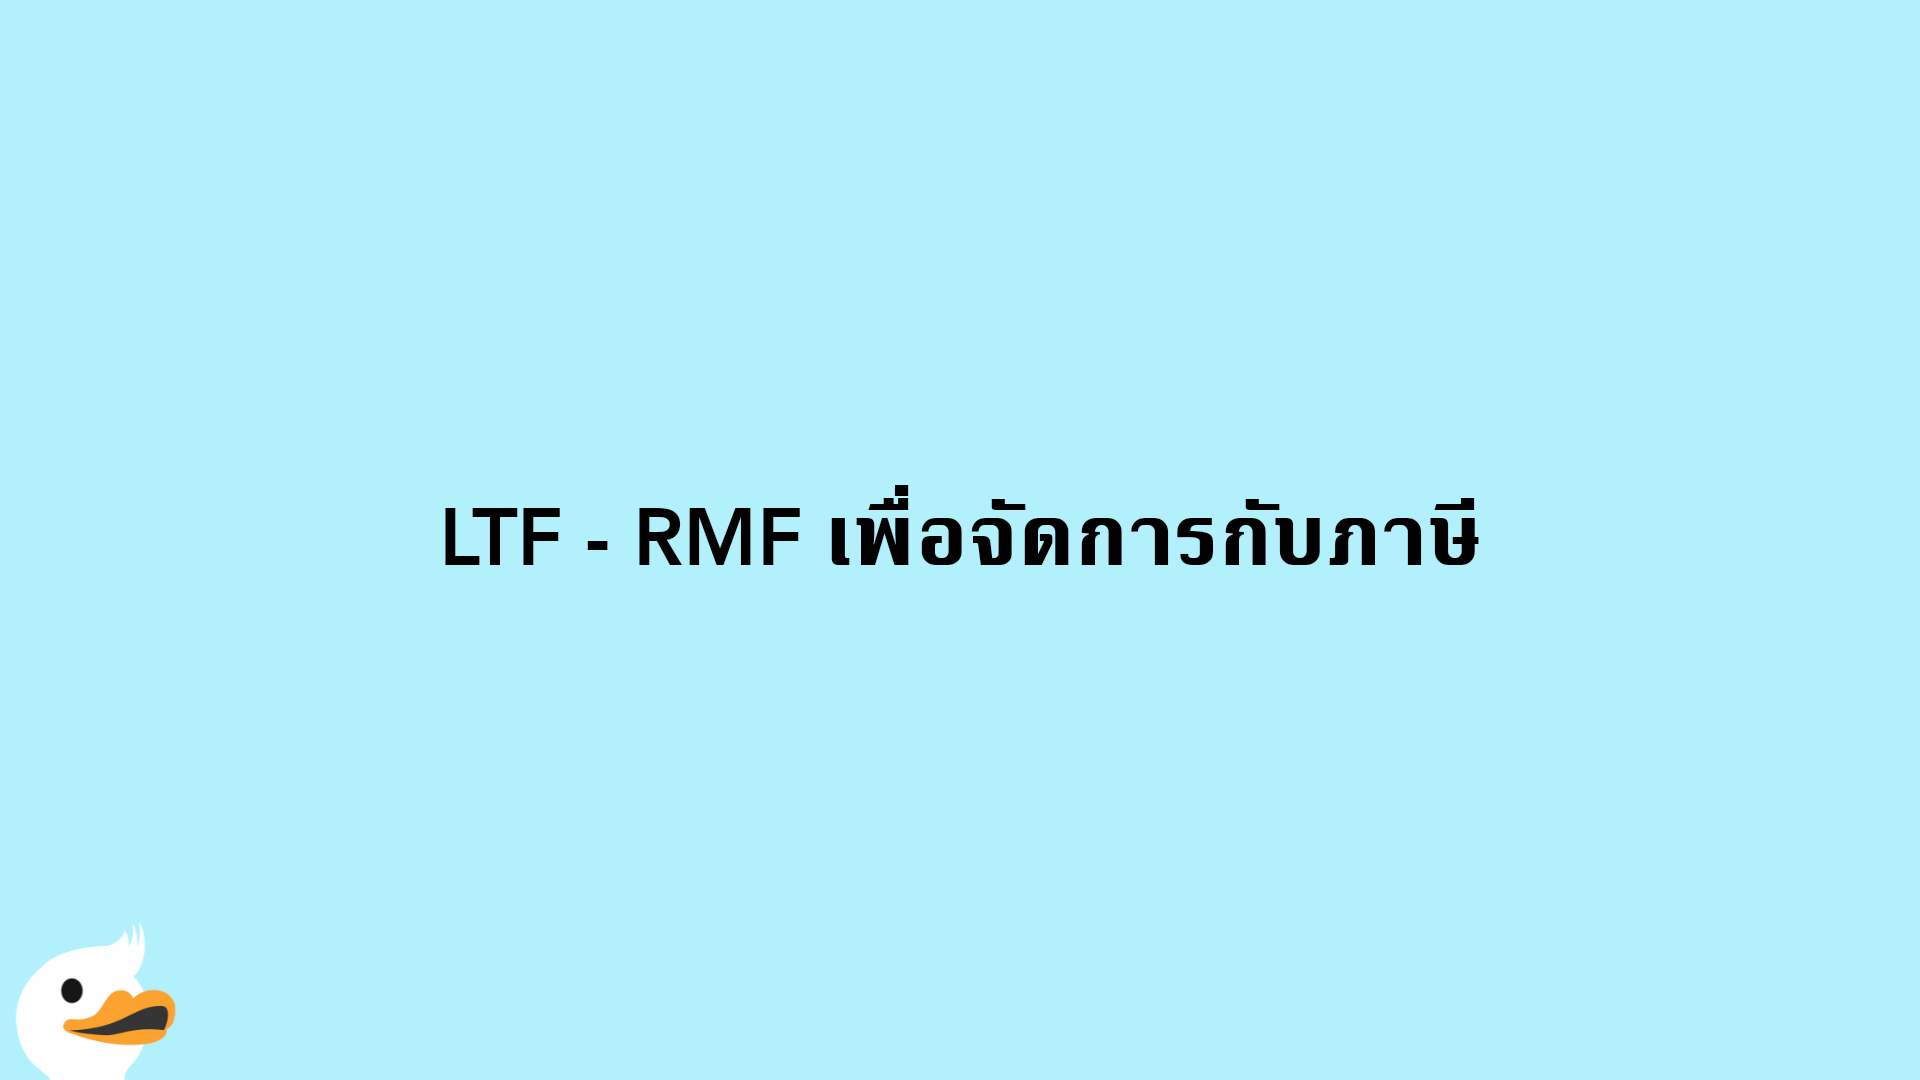 LTF - RMF เพื่อจัดการกับภาษี